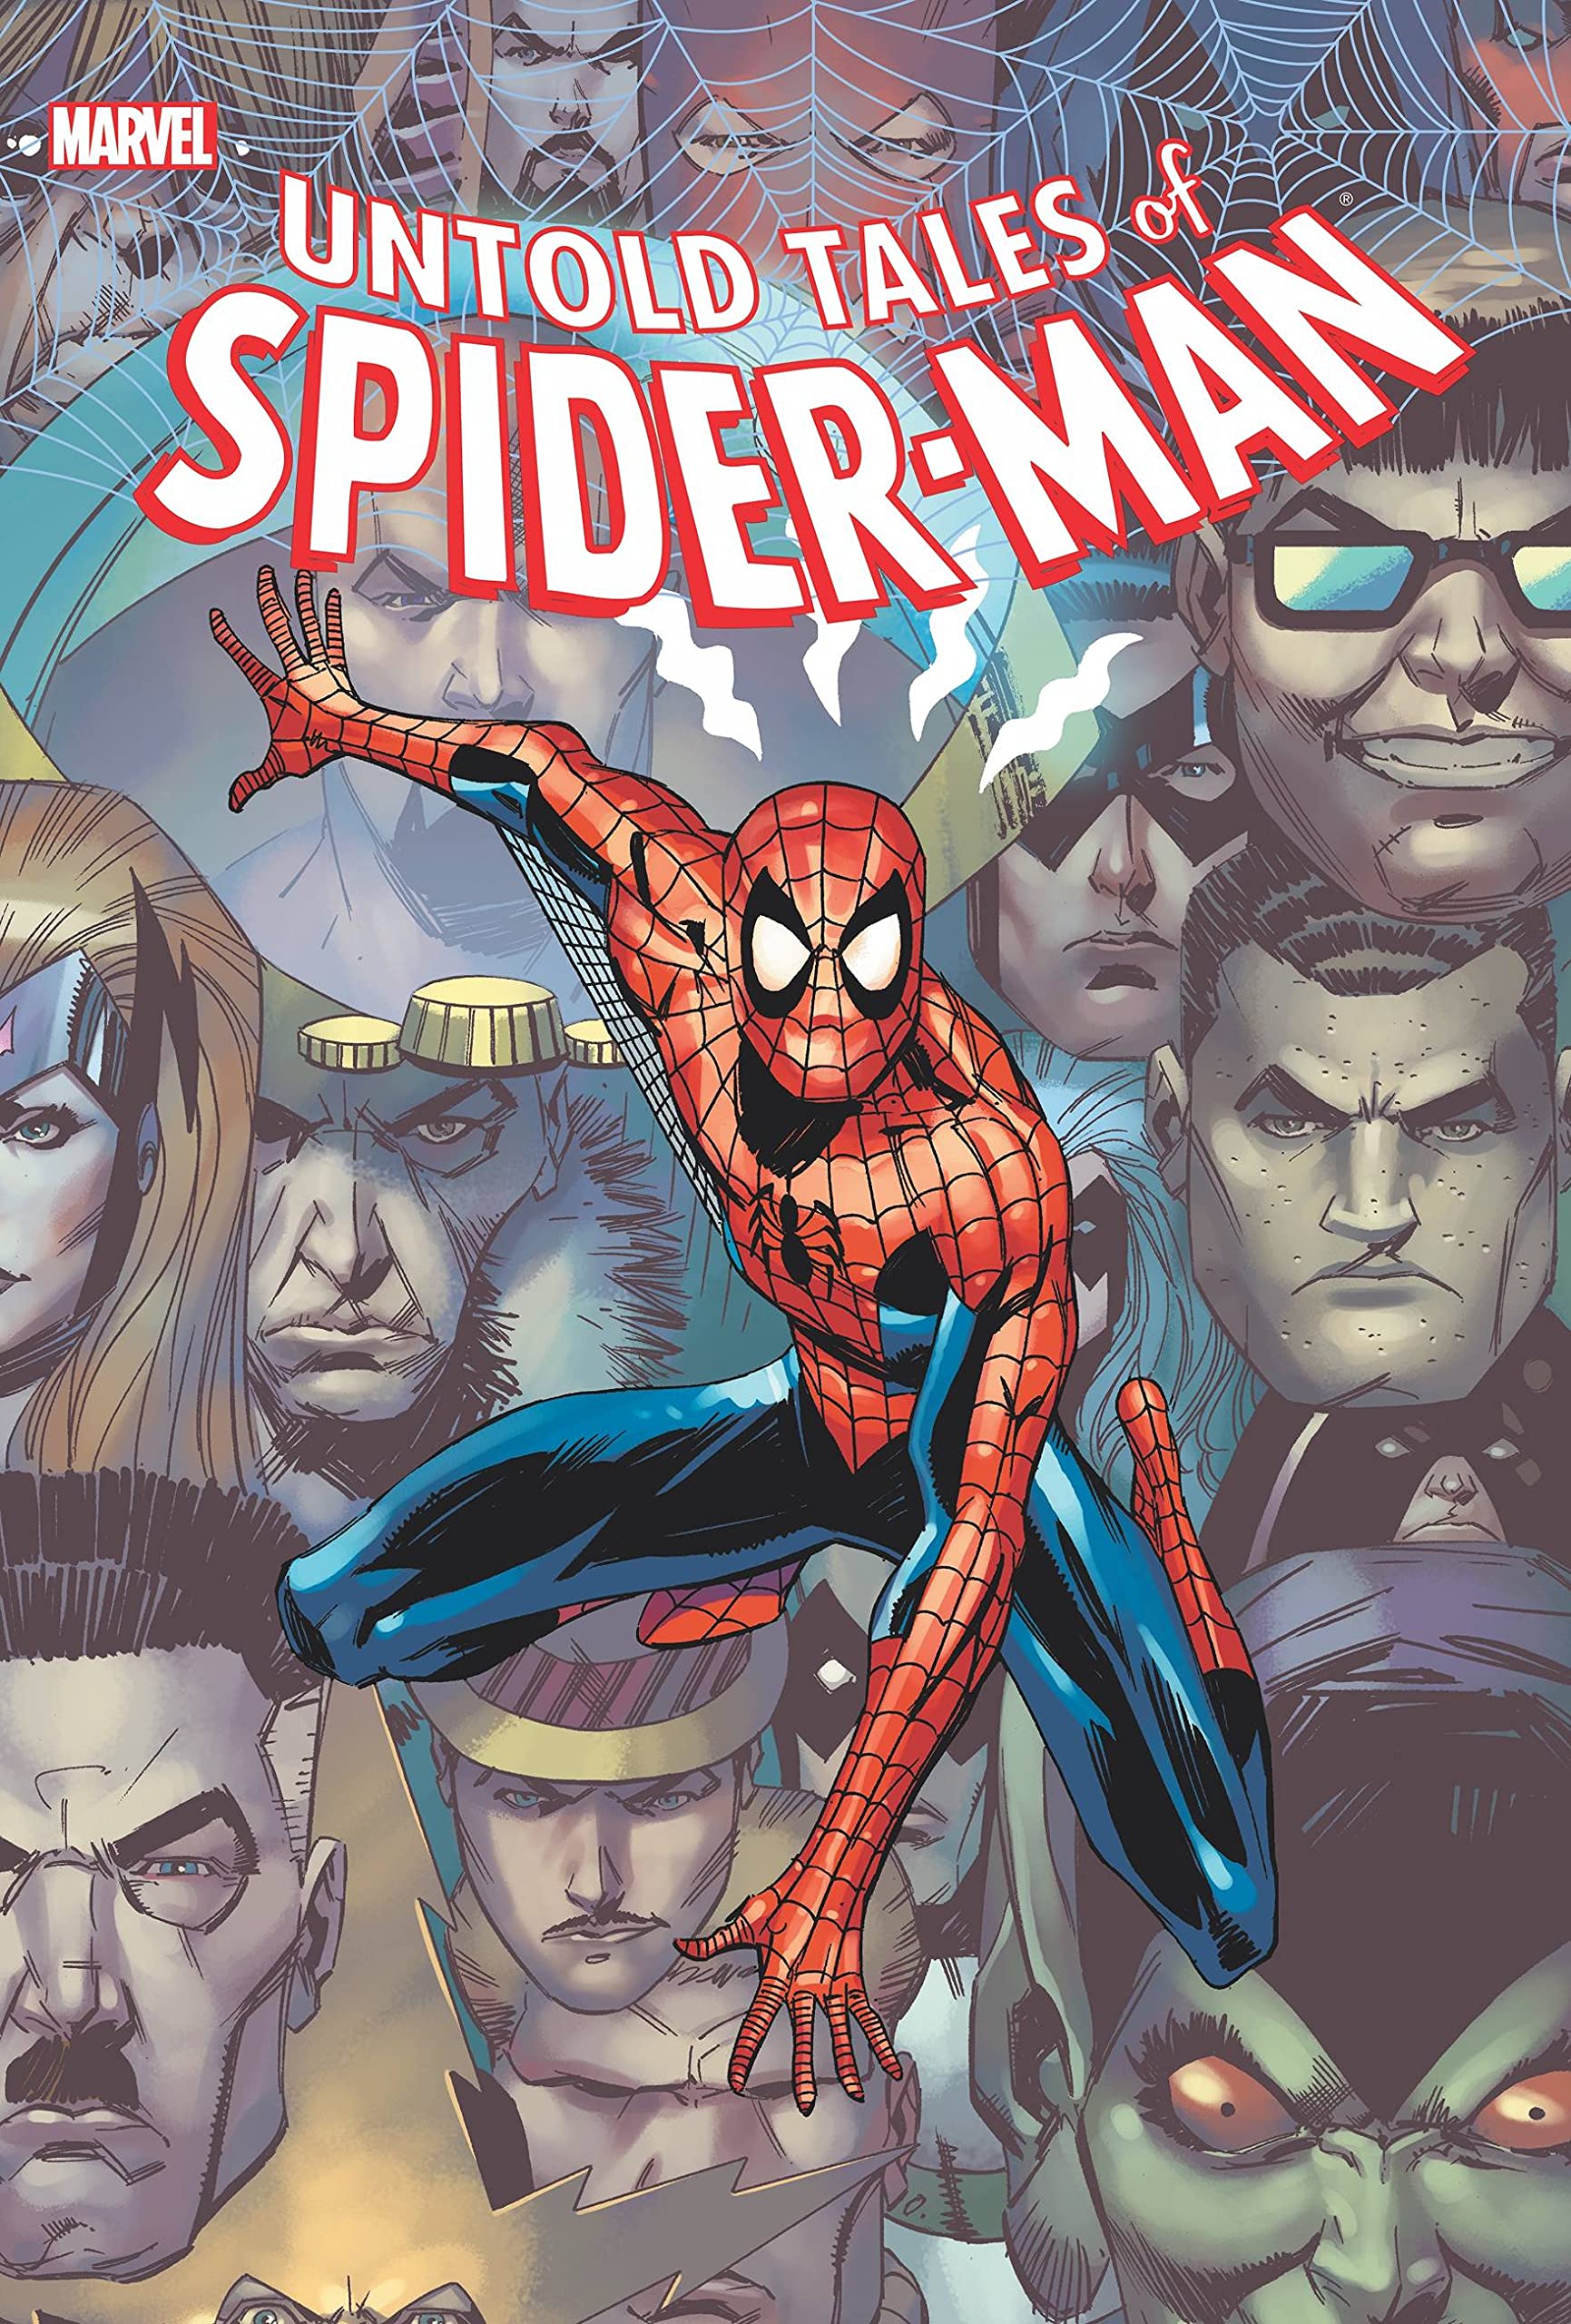 marvel comics, Marvel graphic novel, spiderman - Best Books